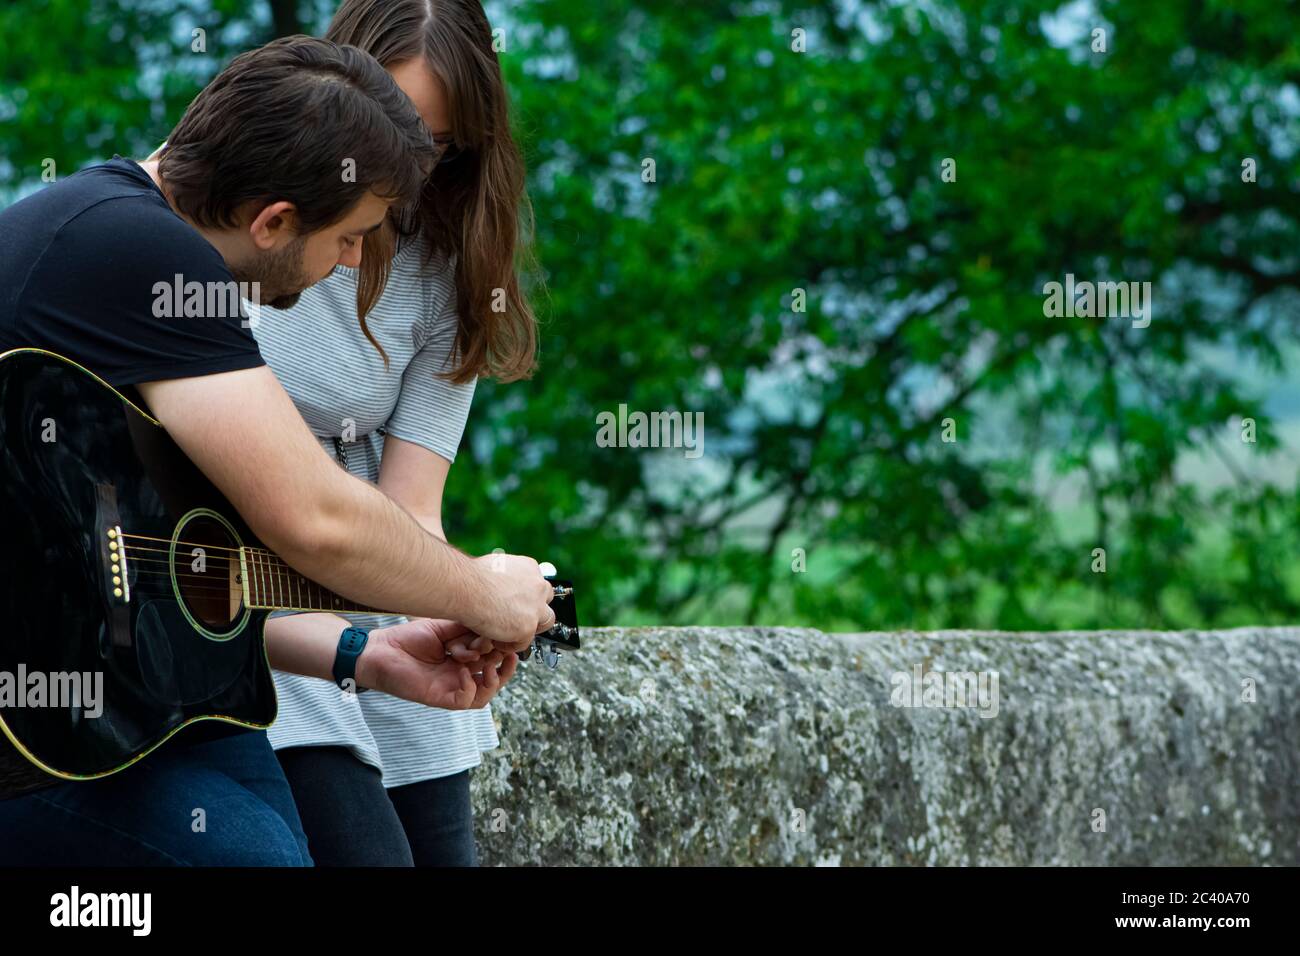 Bruder lehrt Schwester Gitarre in der Natur zu spielen Stockfoto